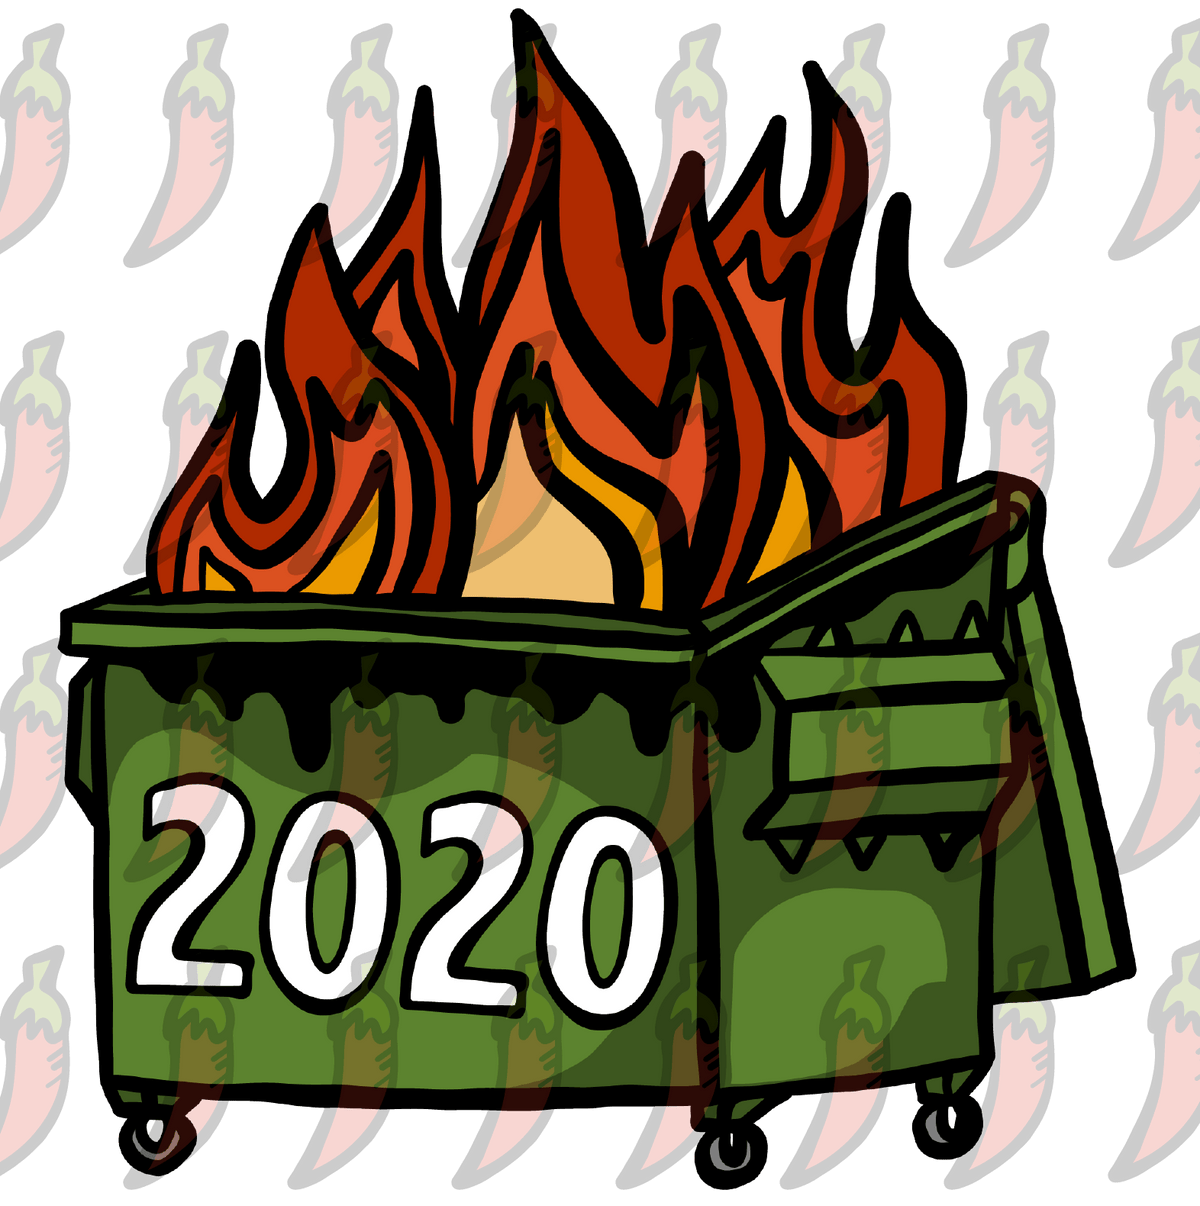 2020 Dumpster Fire 🗑️ - Stubby Holder